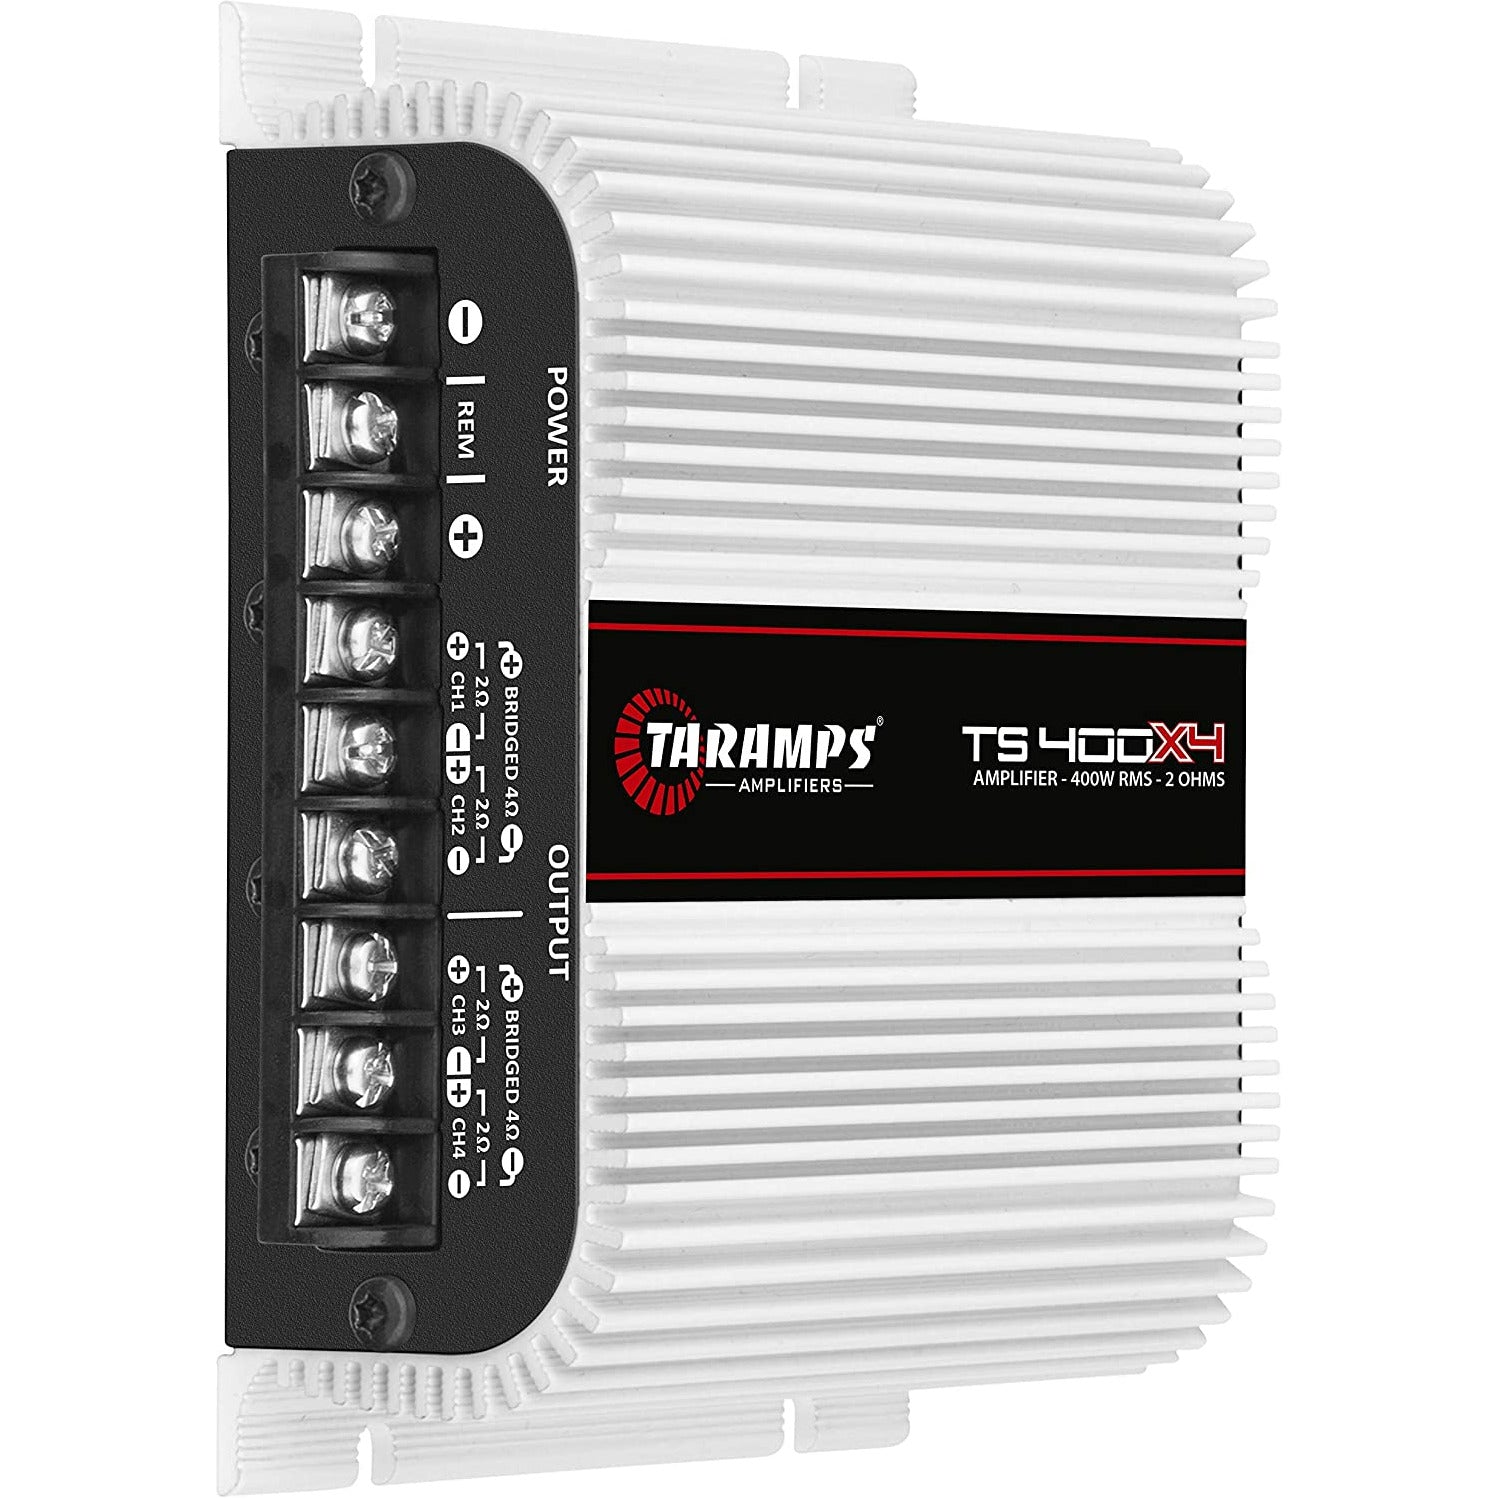 Taramps TS400x4 4-Channel Car Amplifier 400 Watts @ 2-Ohms